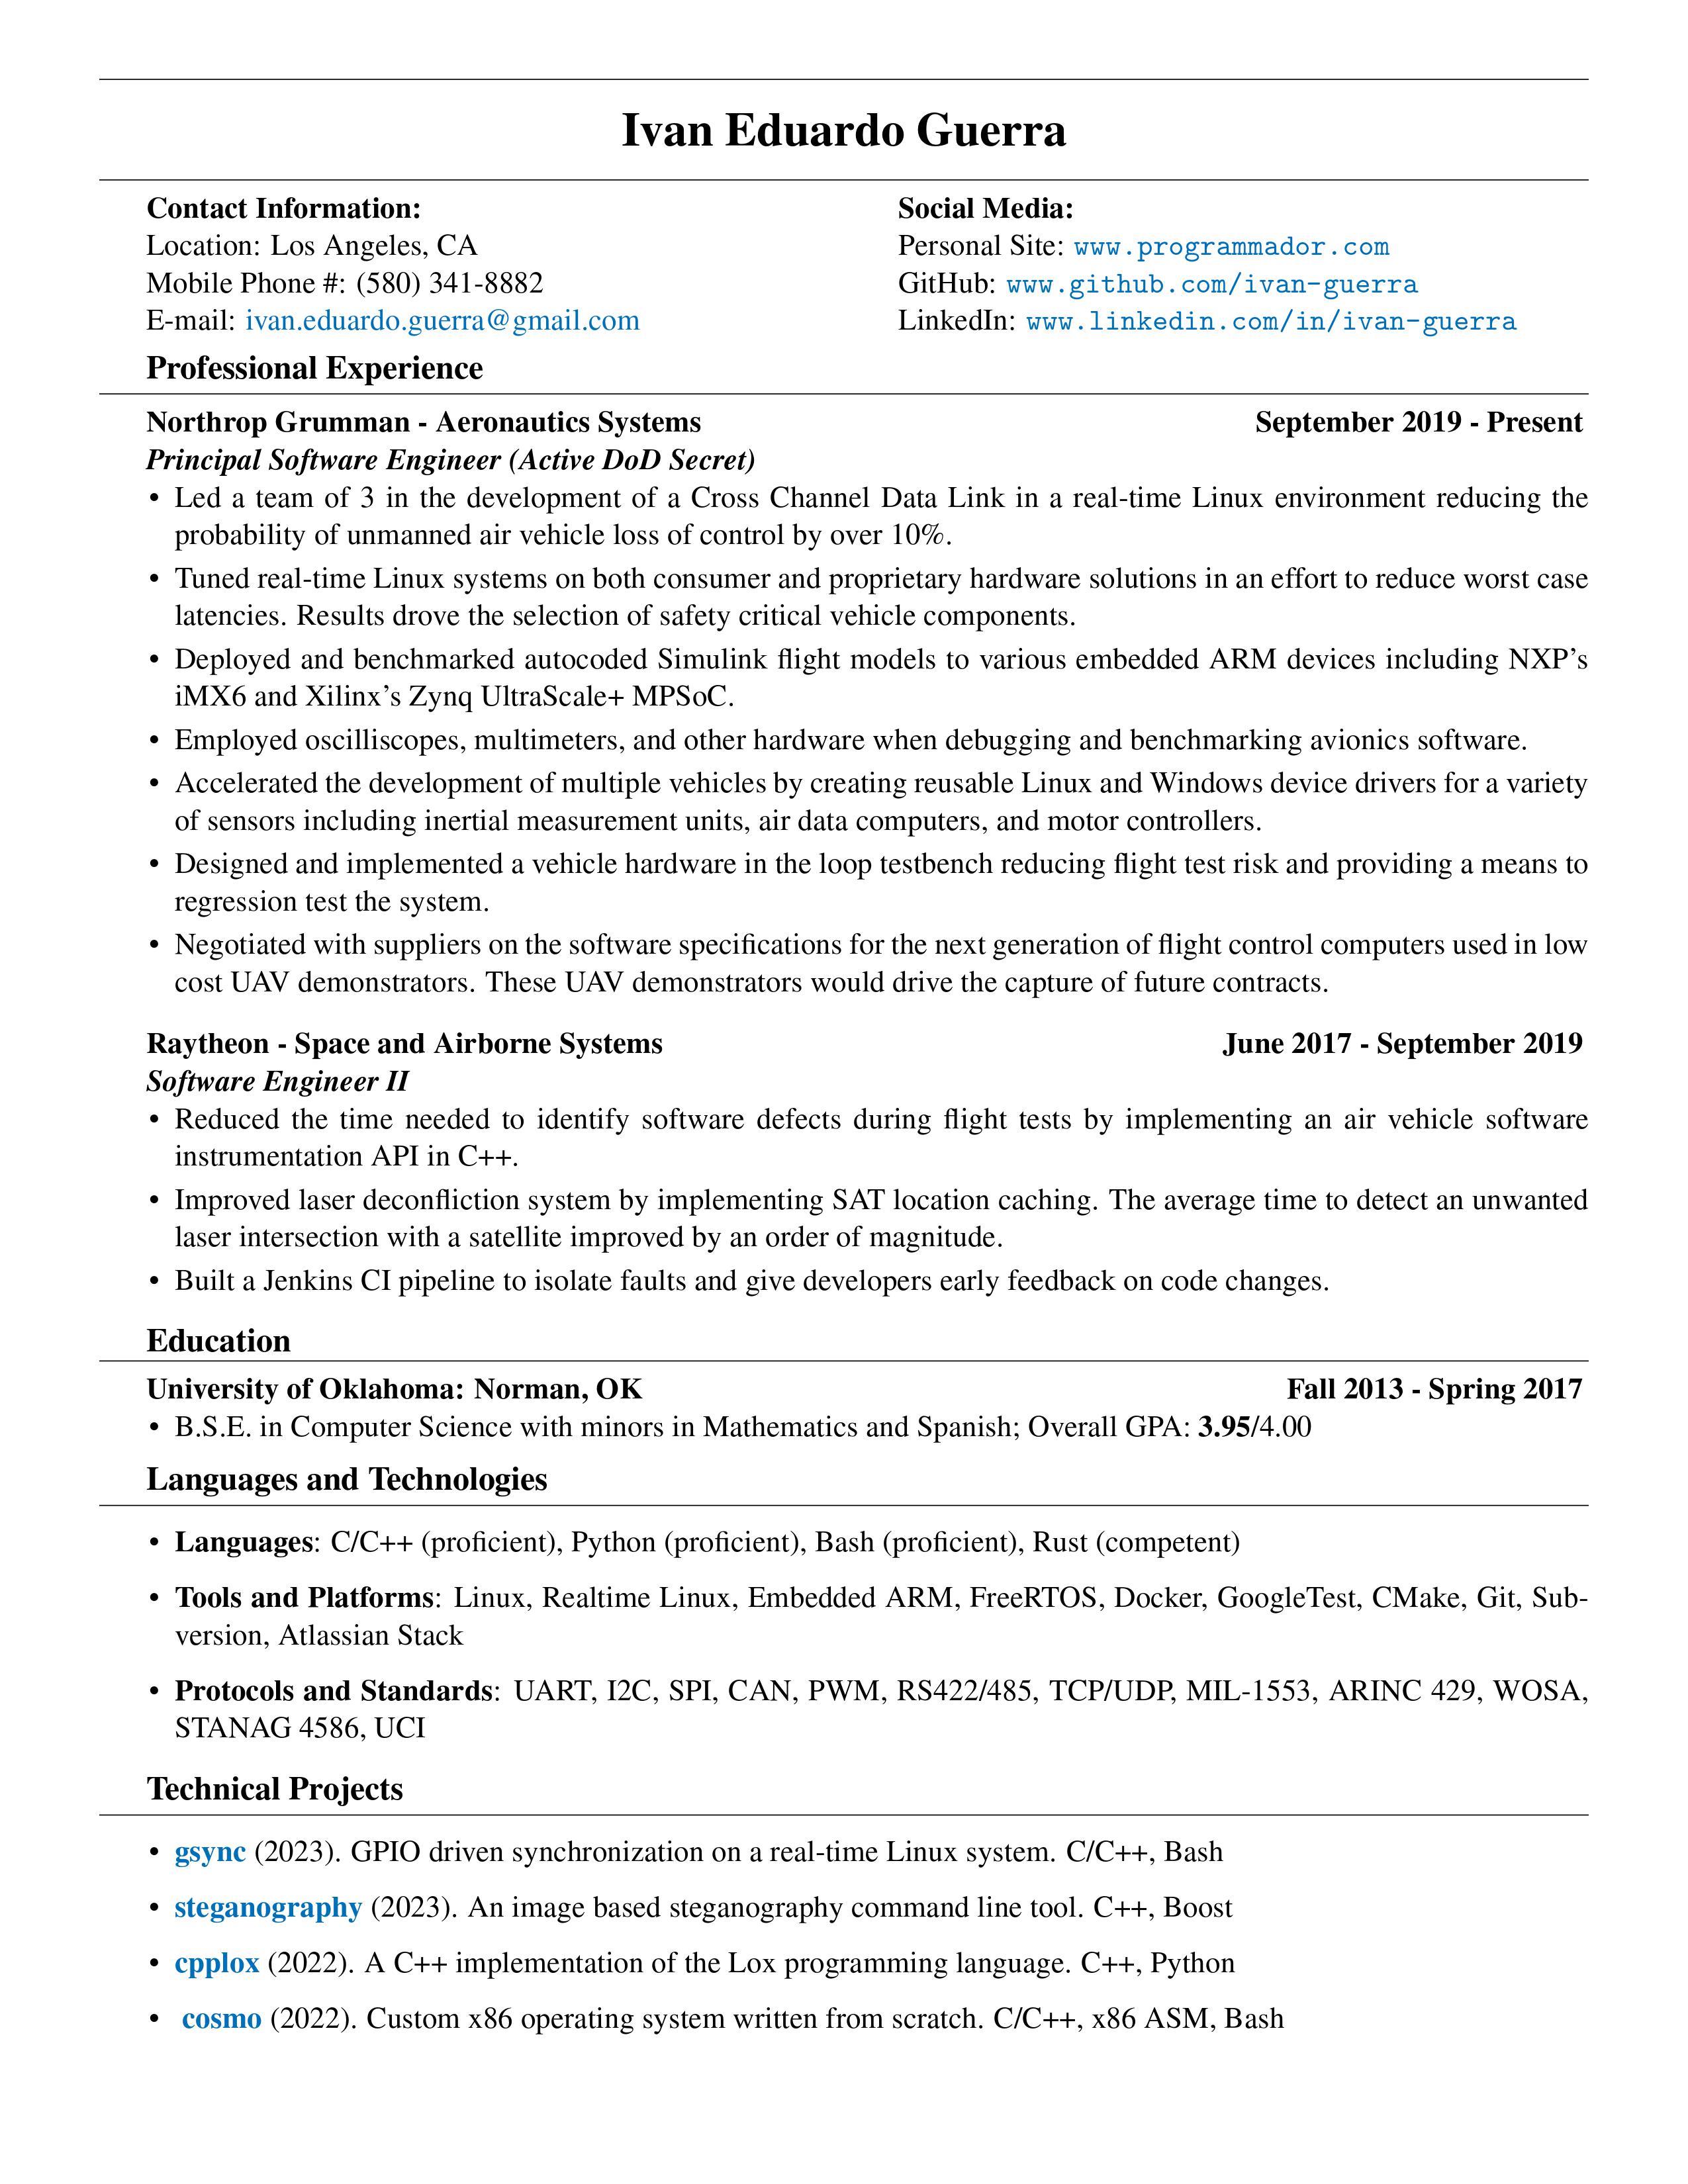 Resume as PDF